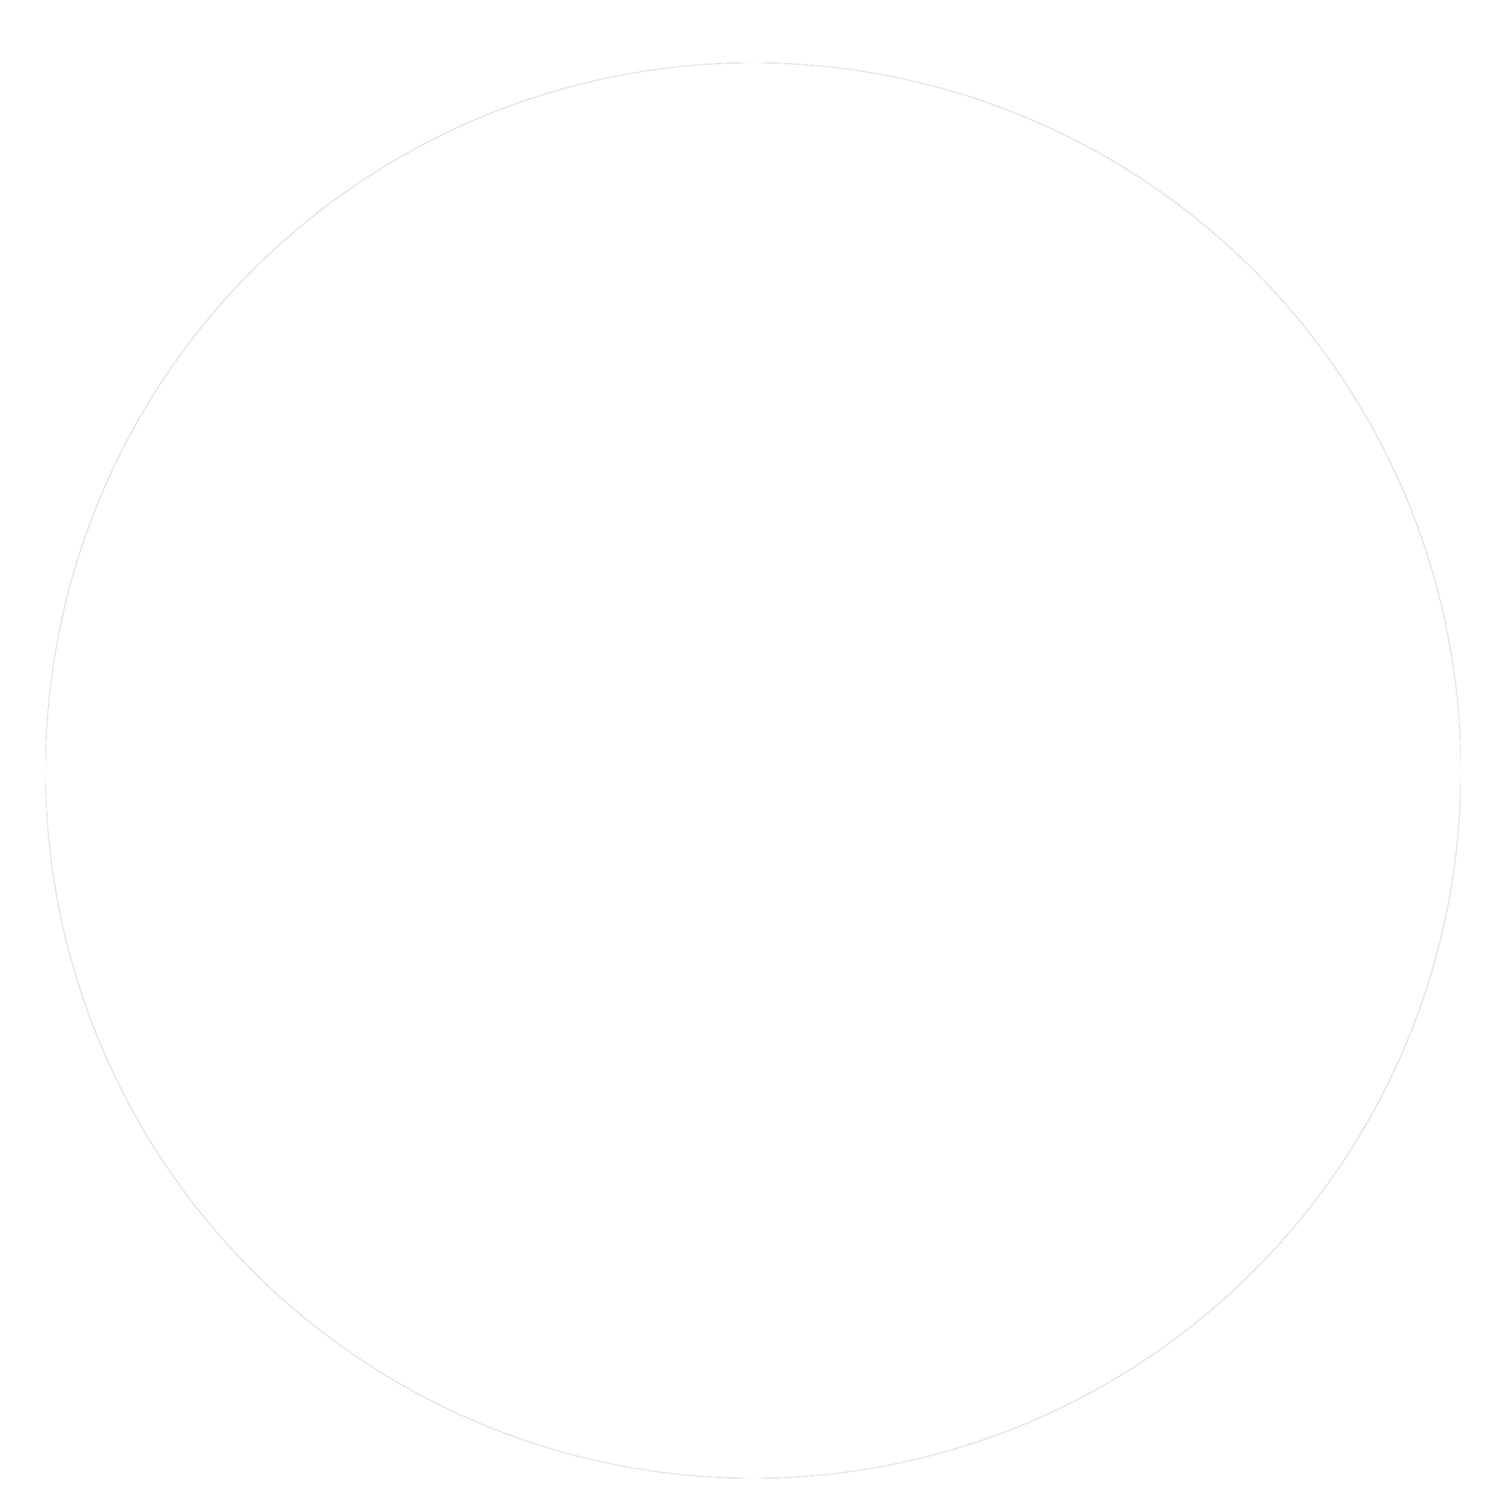 BB&amp;B